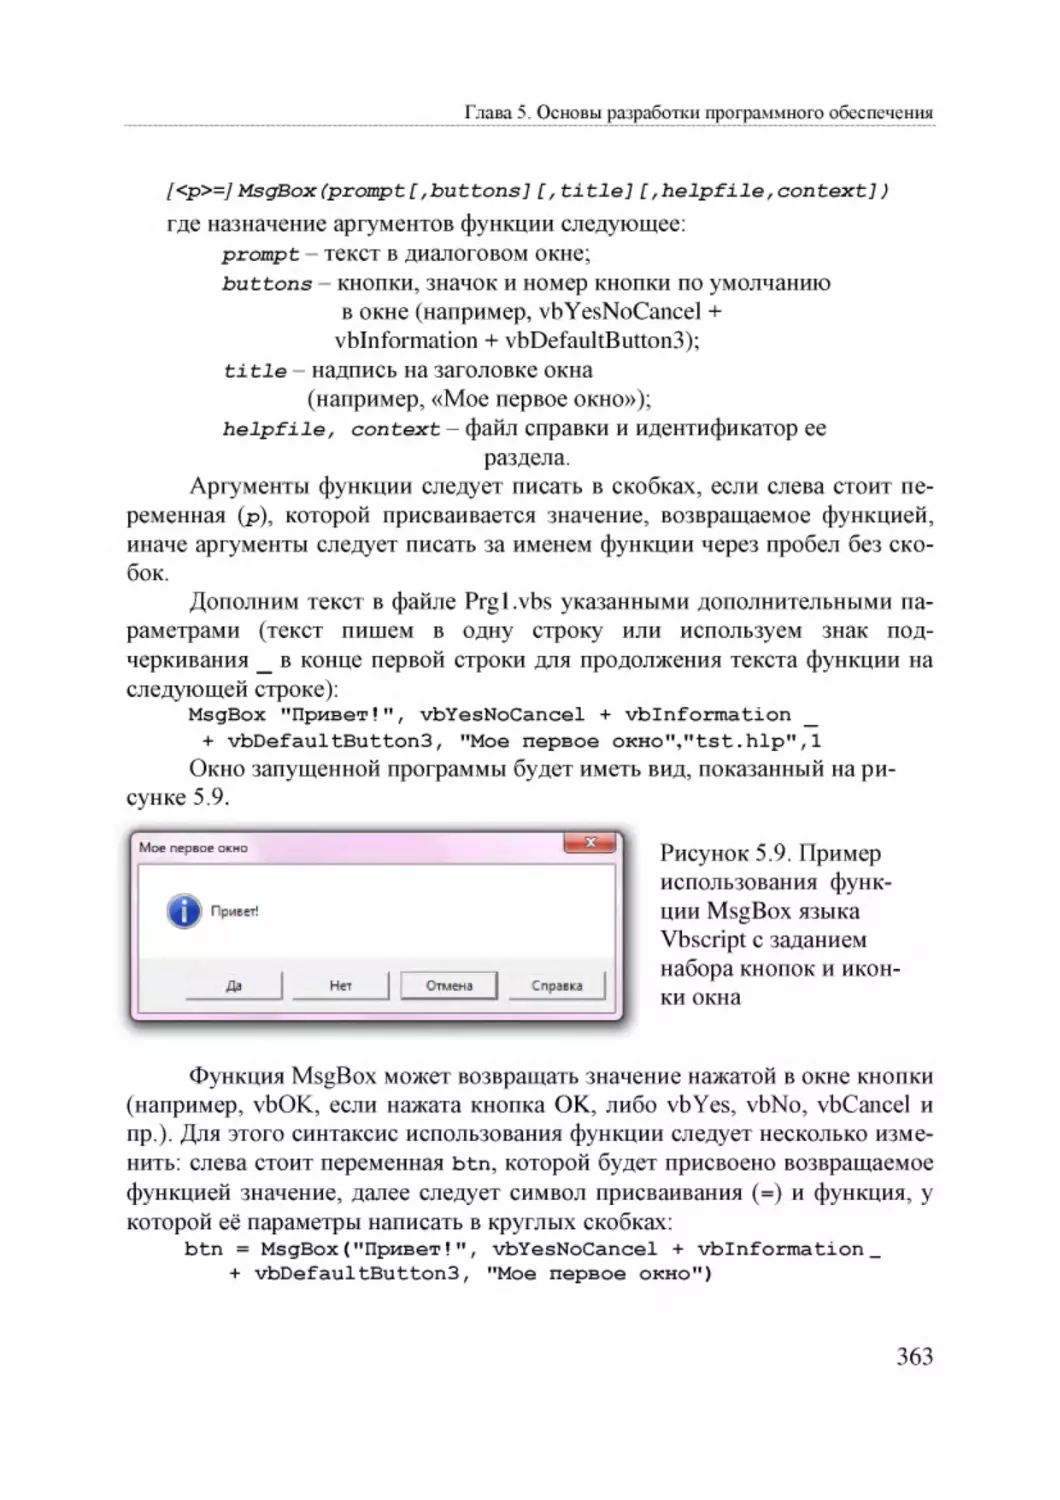 Informatika_Uchebnik_dlya_vuzov_2010 363